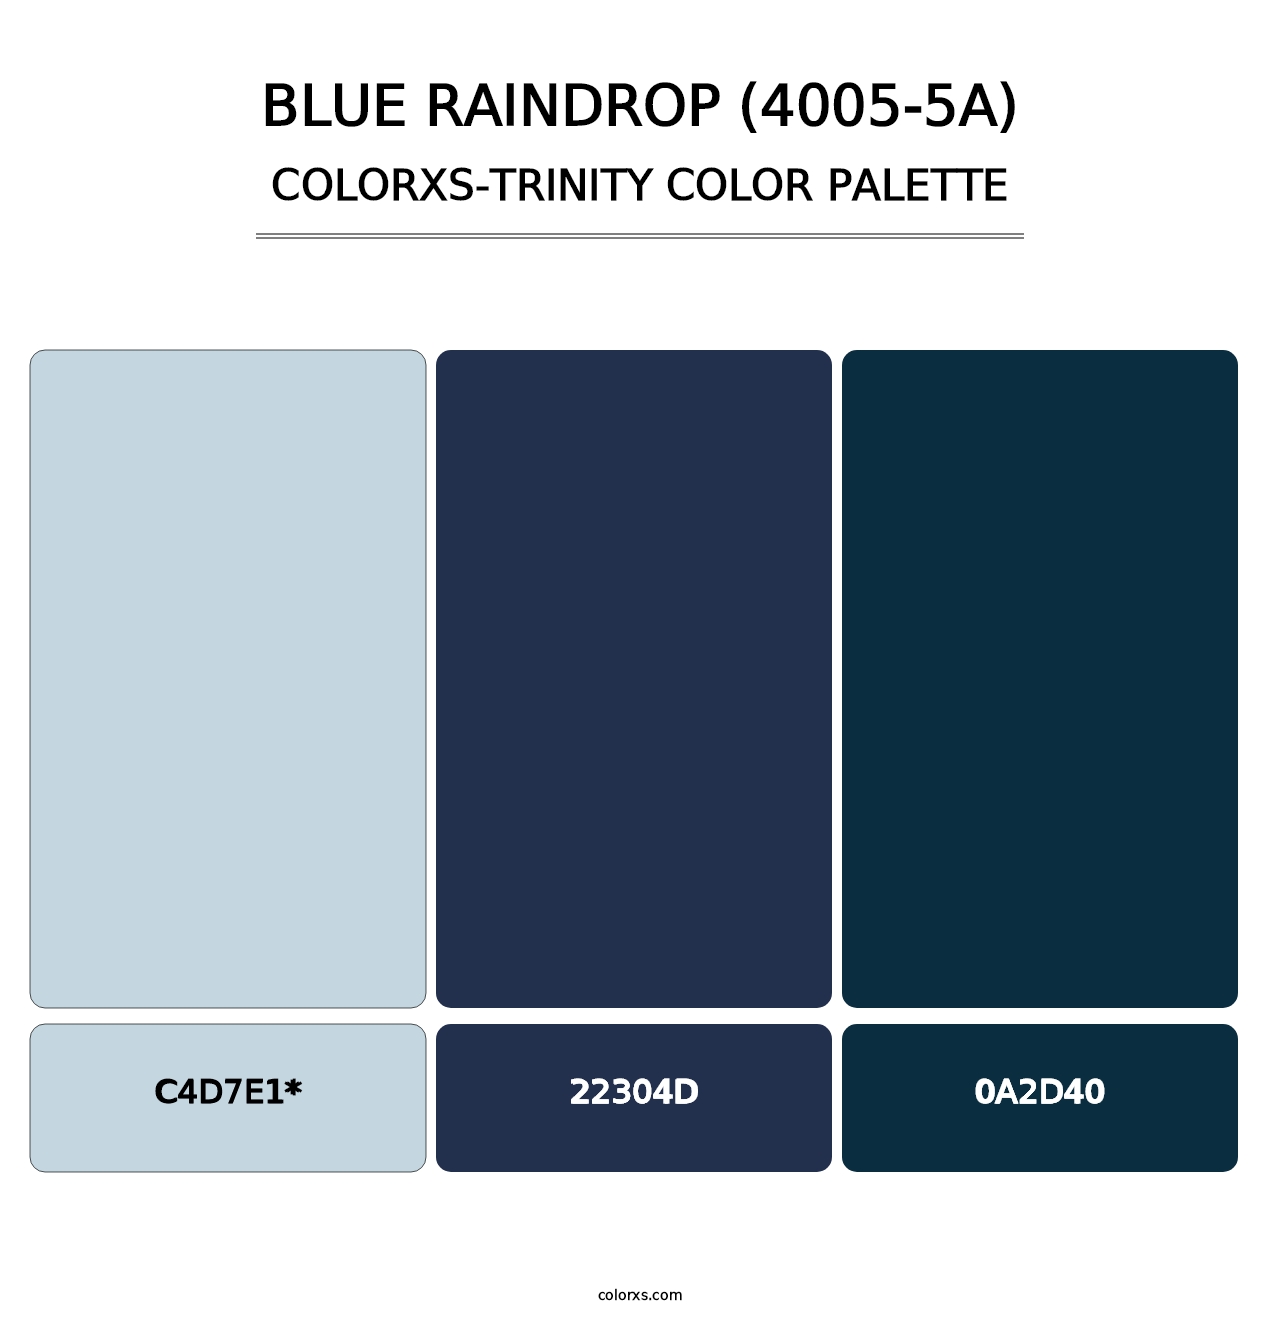 Blue Raindrop (4005-5A) - Colorxs Trinity Palette